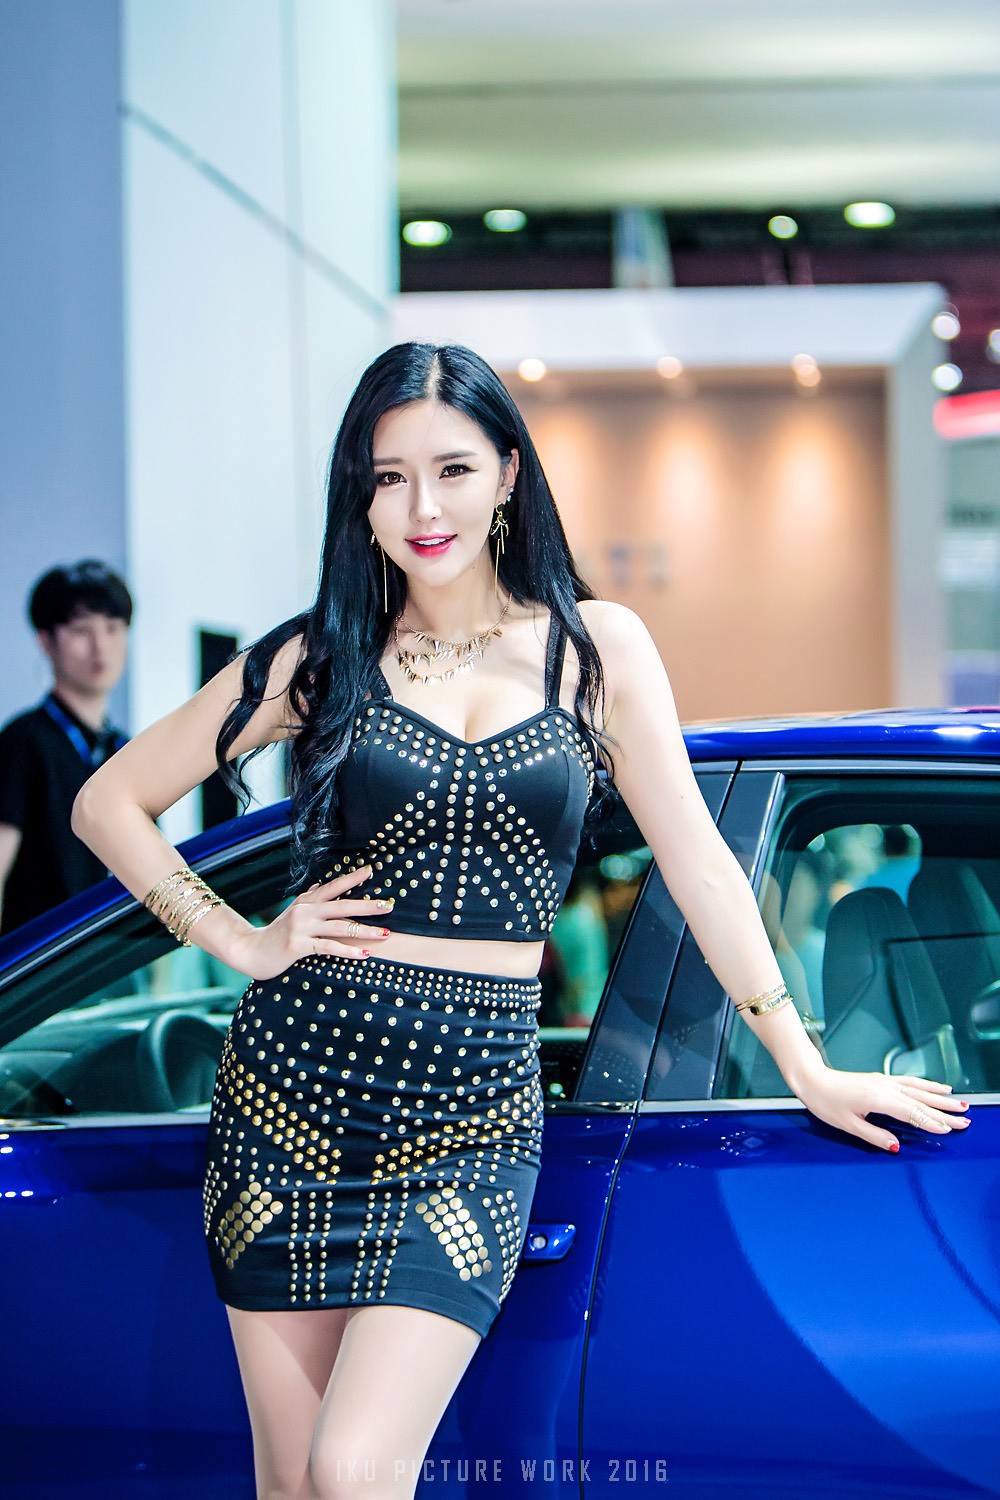 攝影︰韓國車展上的美女模特系列1︰這高跟鞋也是醉了/ 作者: / 來源: